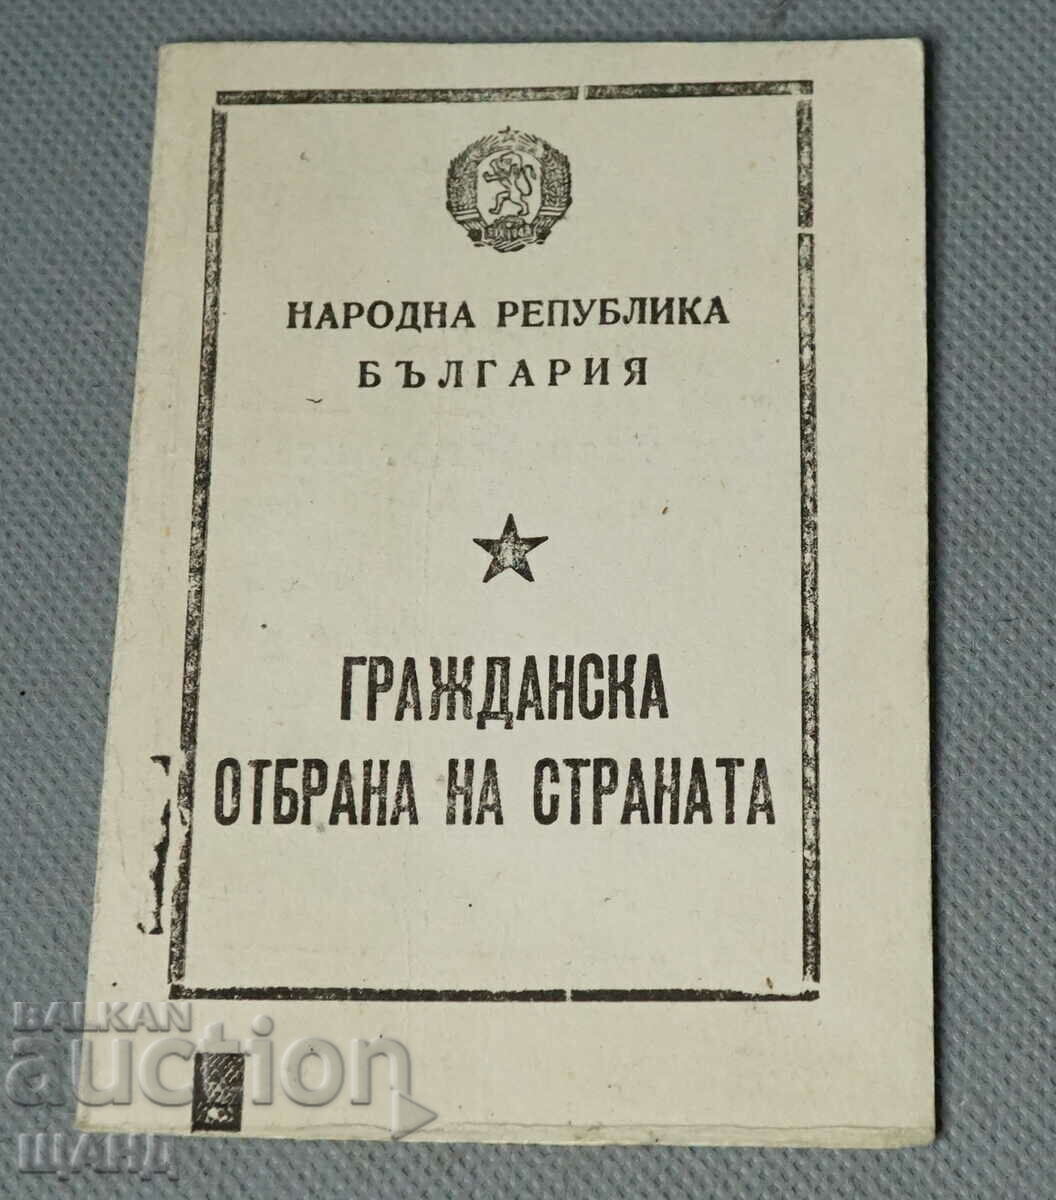 1964 Πιστοποιητικό ολοκληρωμένης εκπαίδευσης Πολιτικής Άμυνας